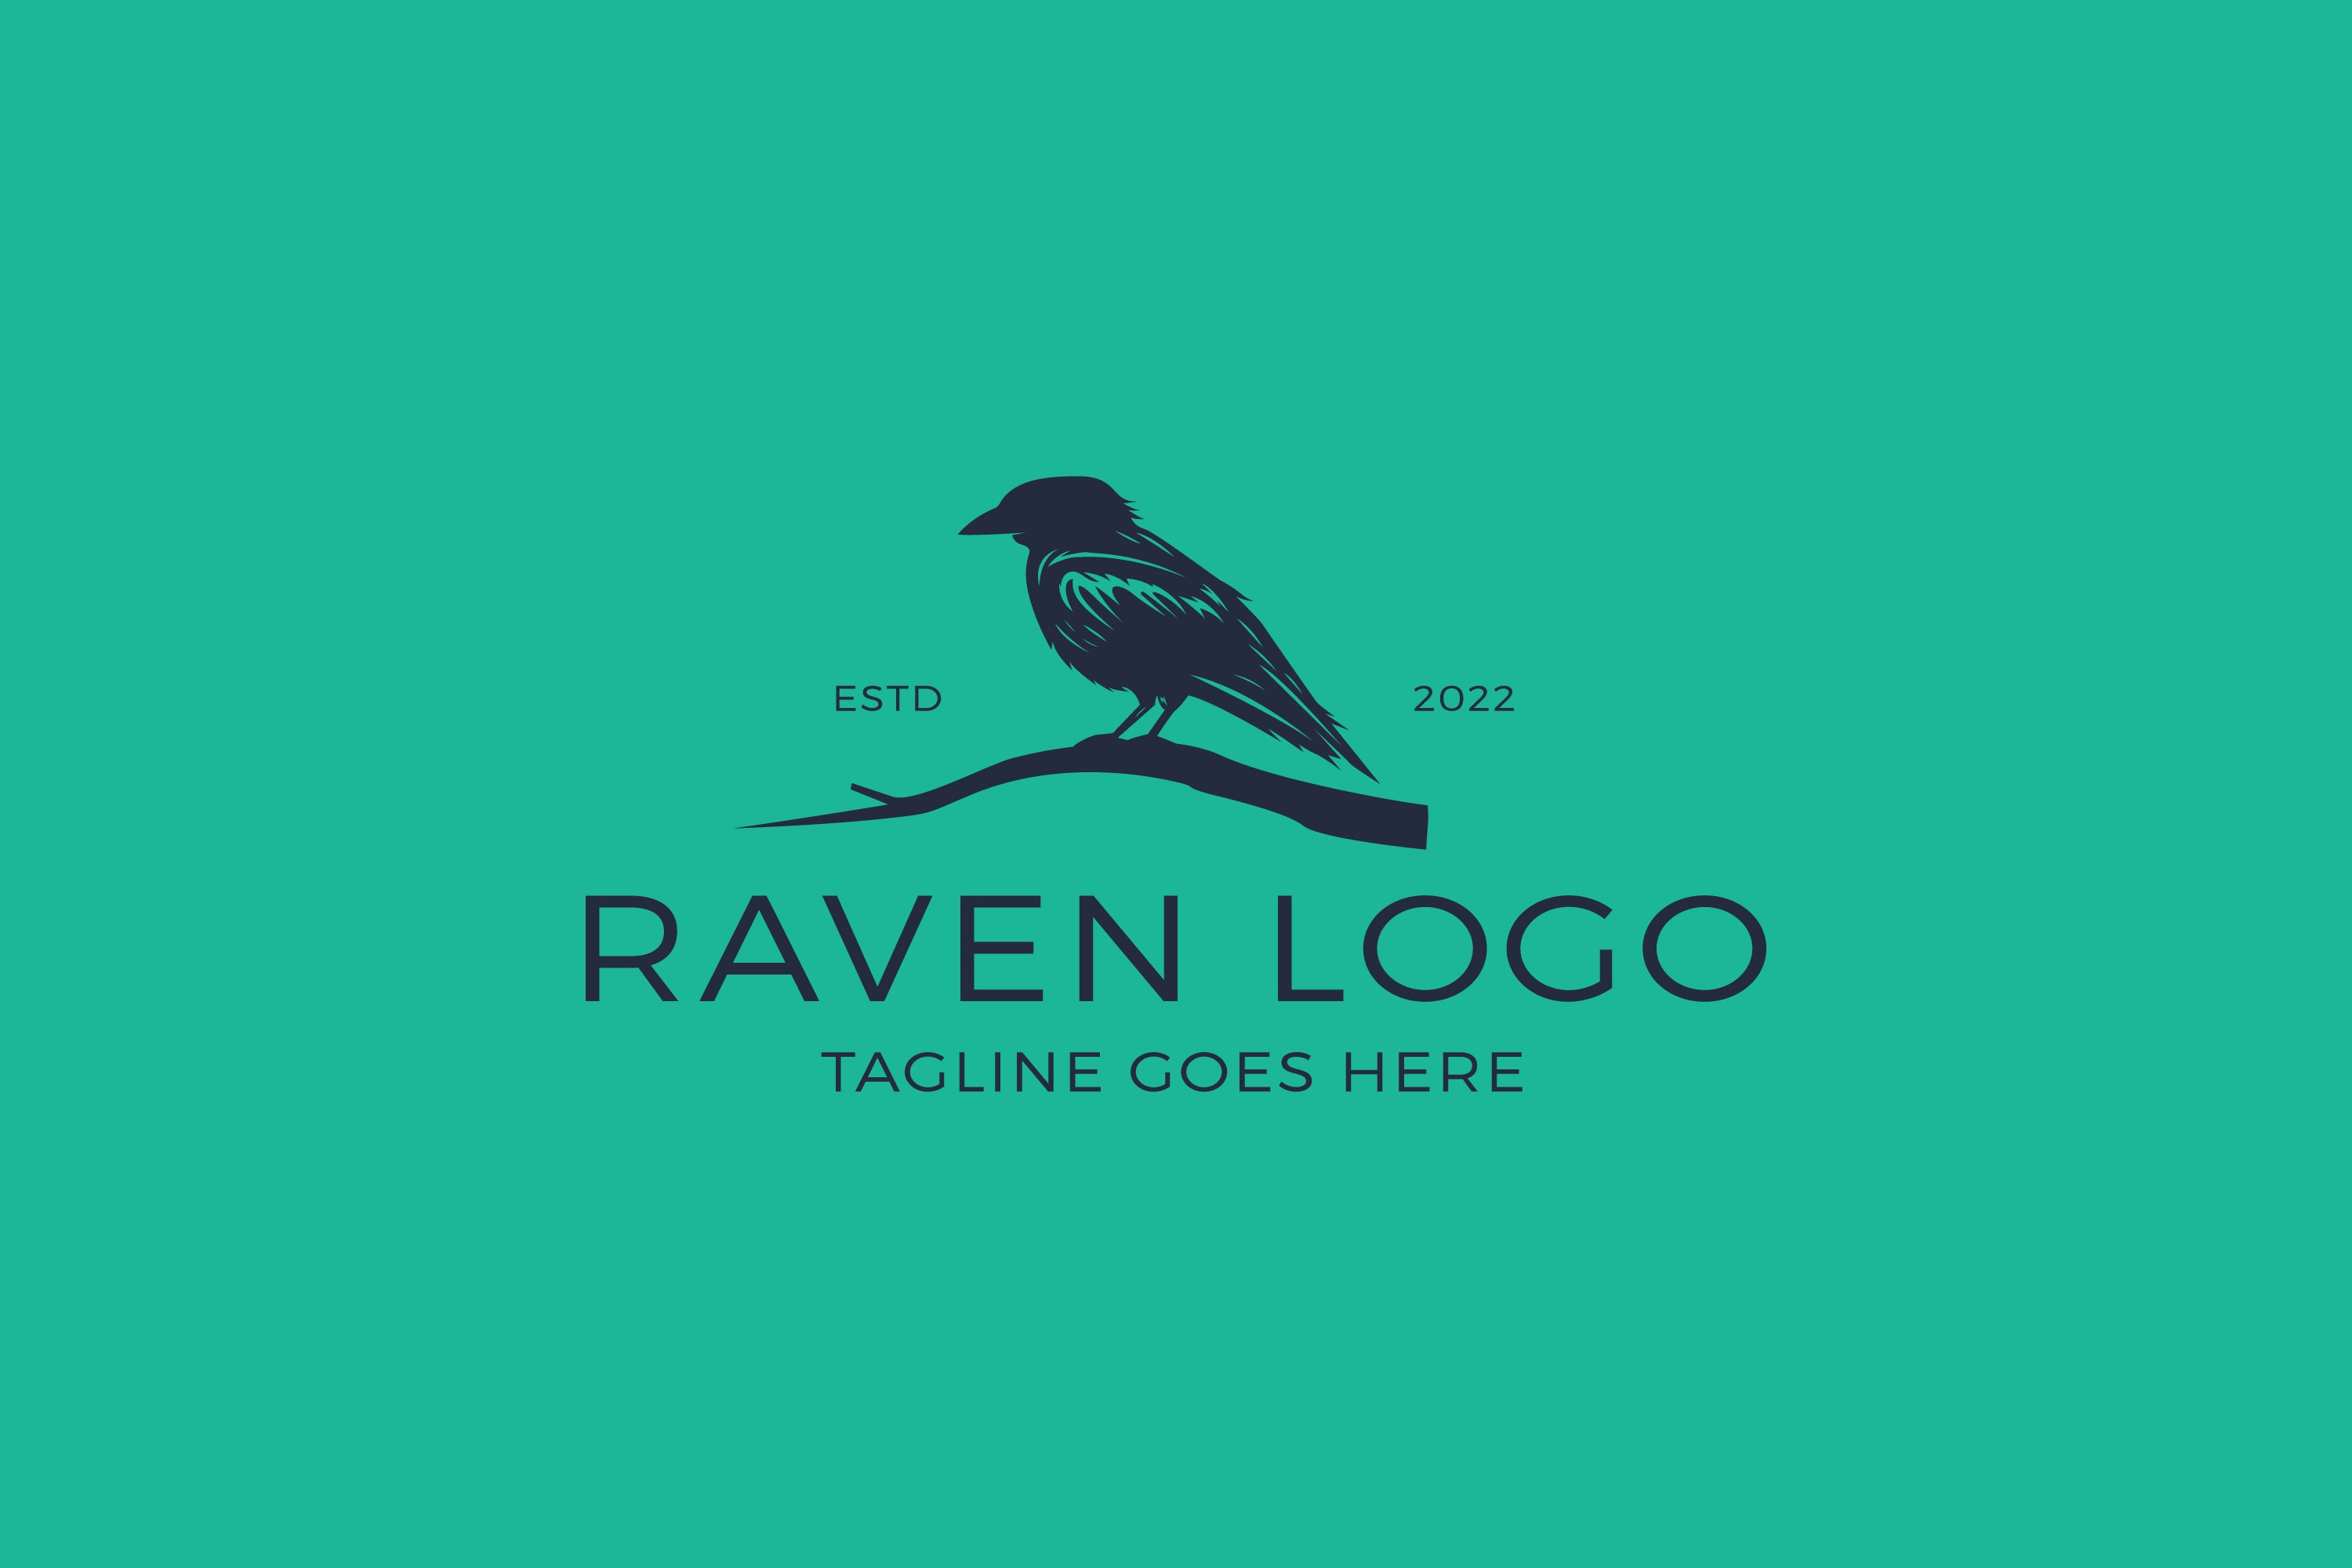 Raven Bird Logo Template cover image.